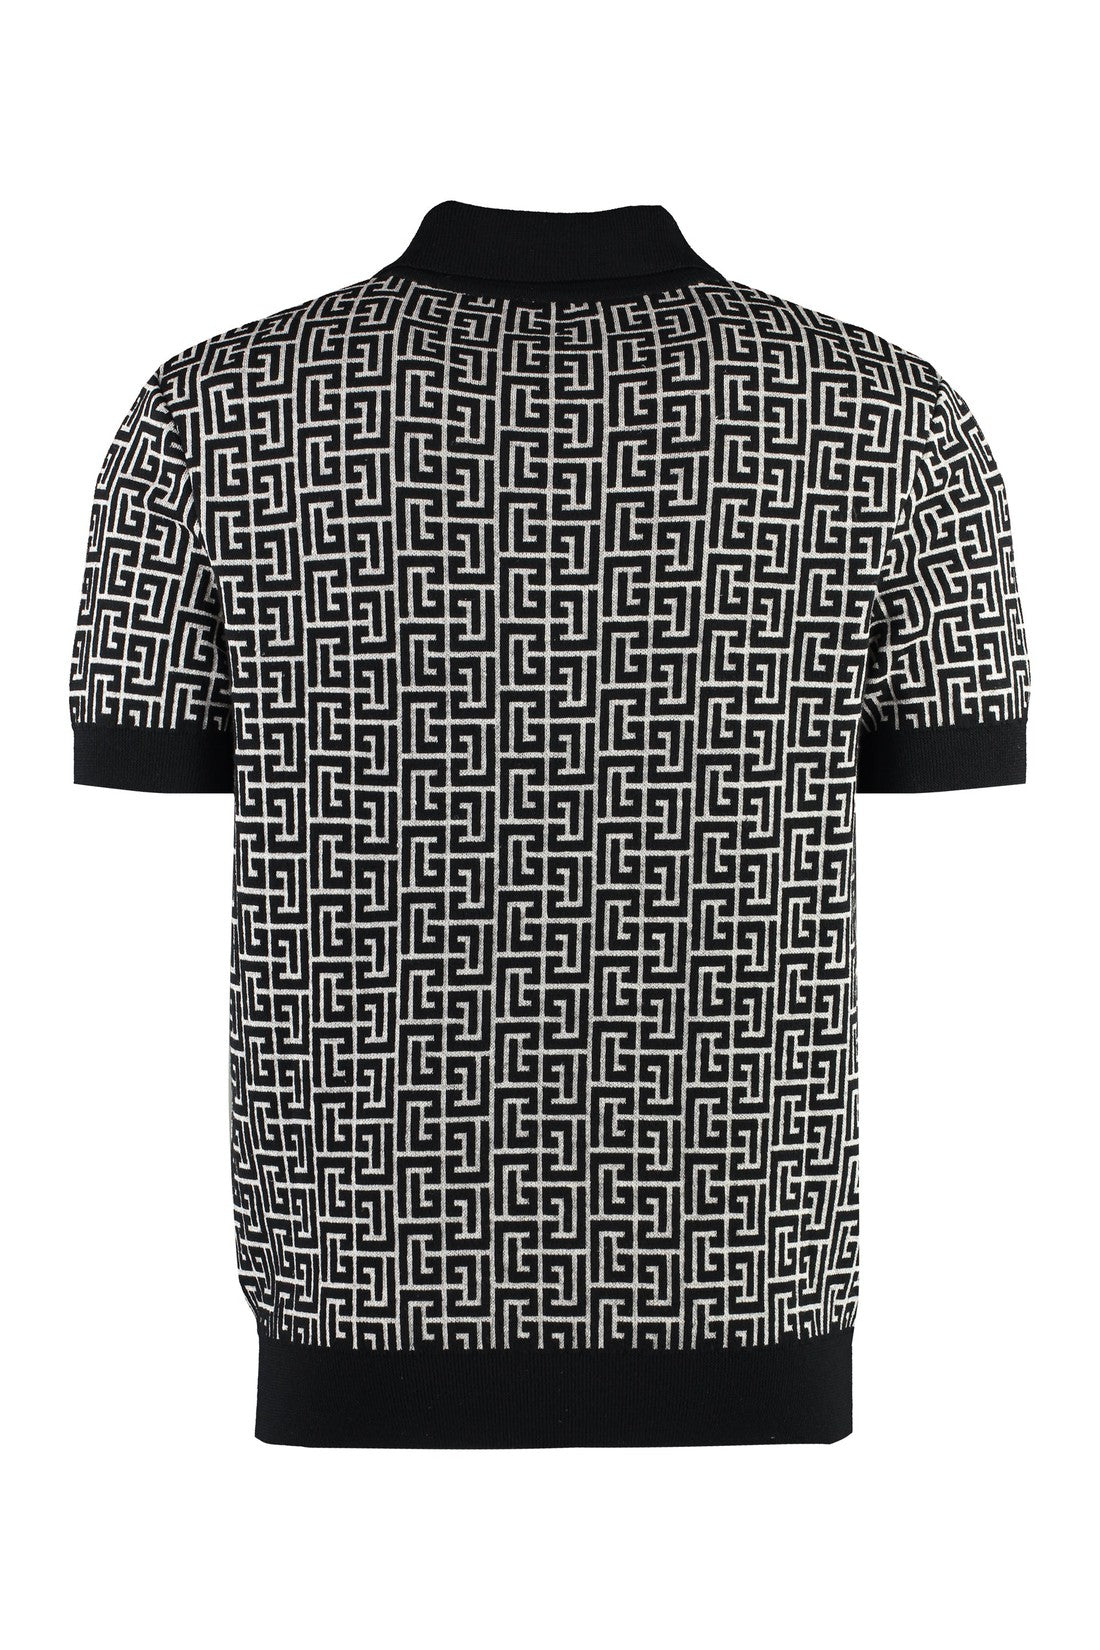 Balmain-OUTLET-SALE-Jacquard knit polo shirt-ARCHIVIST